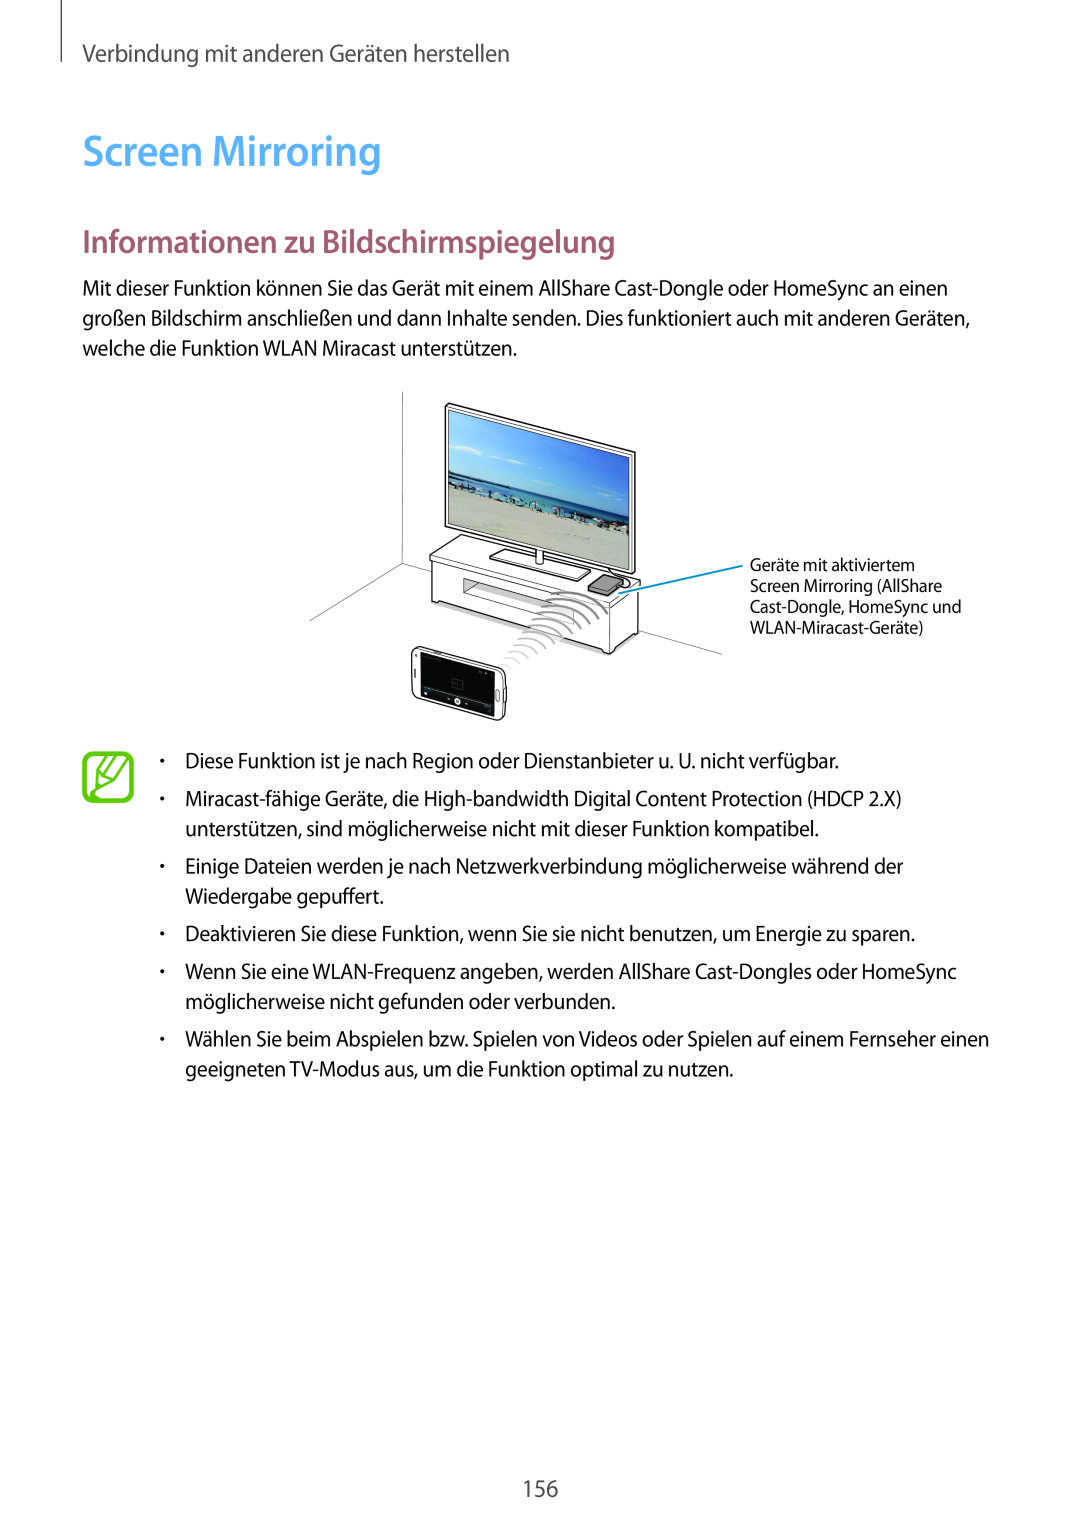 Samsung SM-G901FZWADBT Screen Mirroring, Informationen zu Bildschirmspiegelung, Verbindung mit anderen Geräten herstellen 